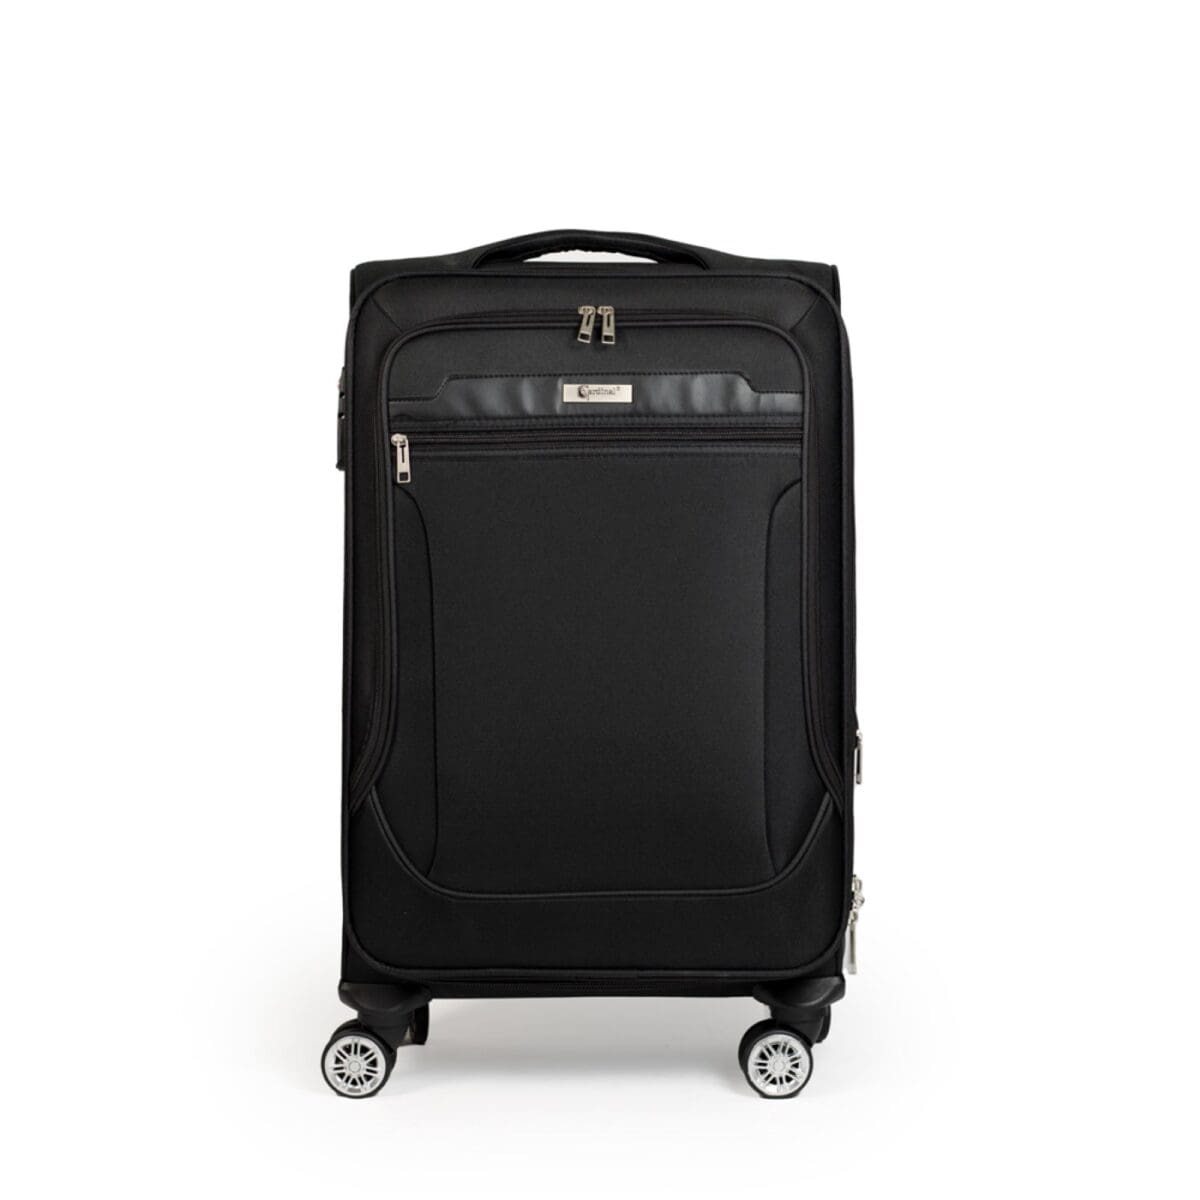 Βαλίτσα μεσαία με διπλά ροδάκια , tsa lock από υφασμάτινο υλικό σε μαύρο χρώμα , επεκτάσιμη.